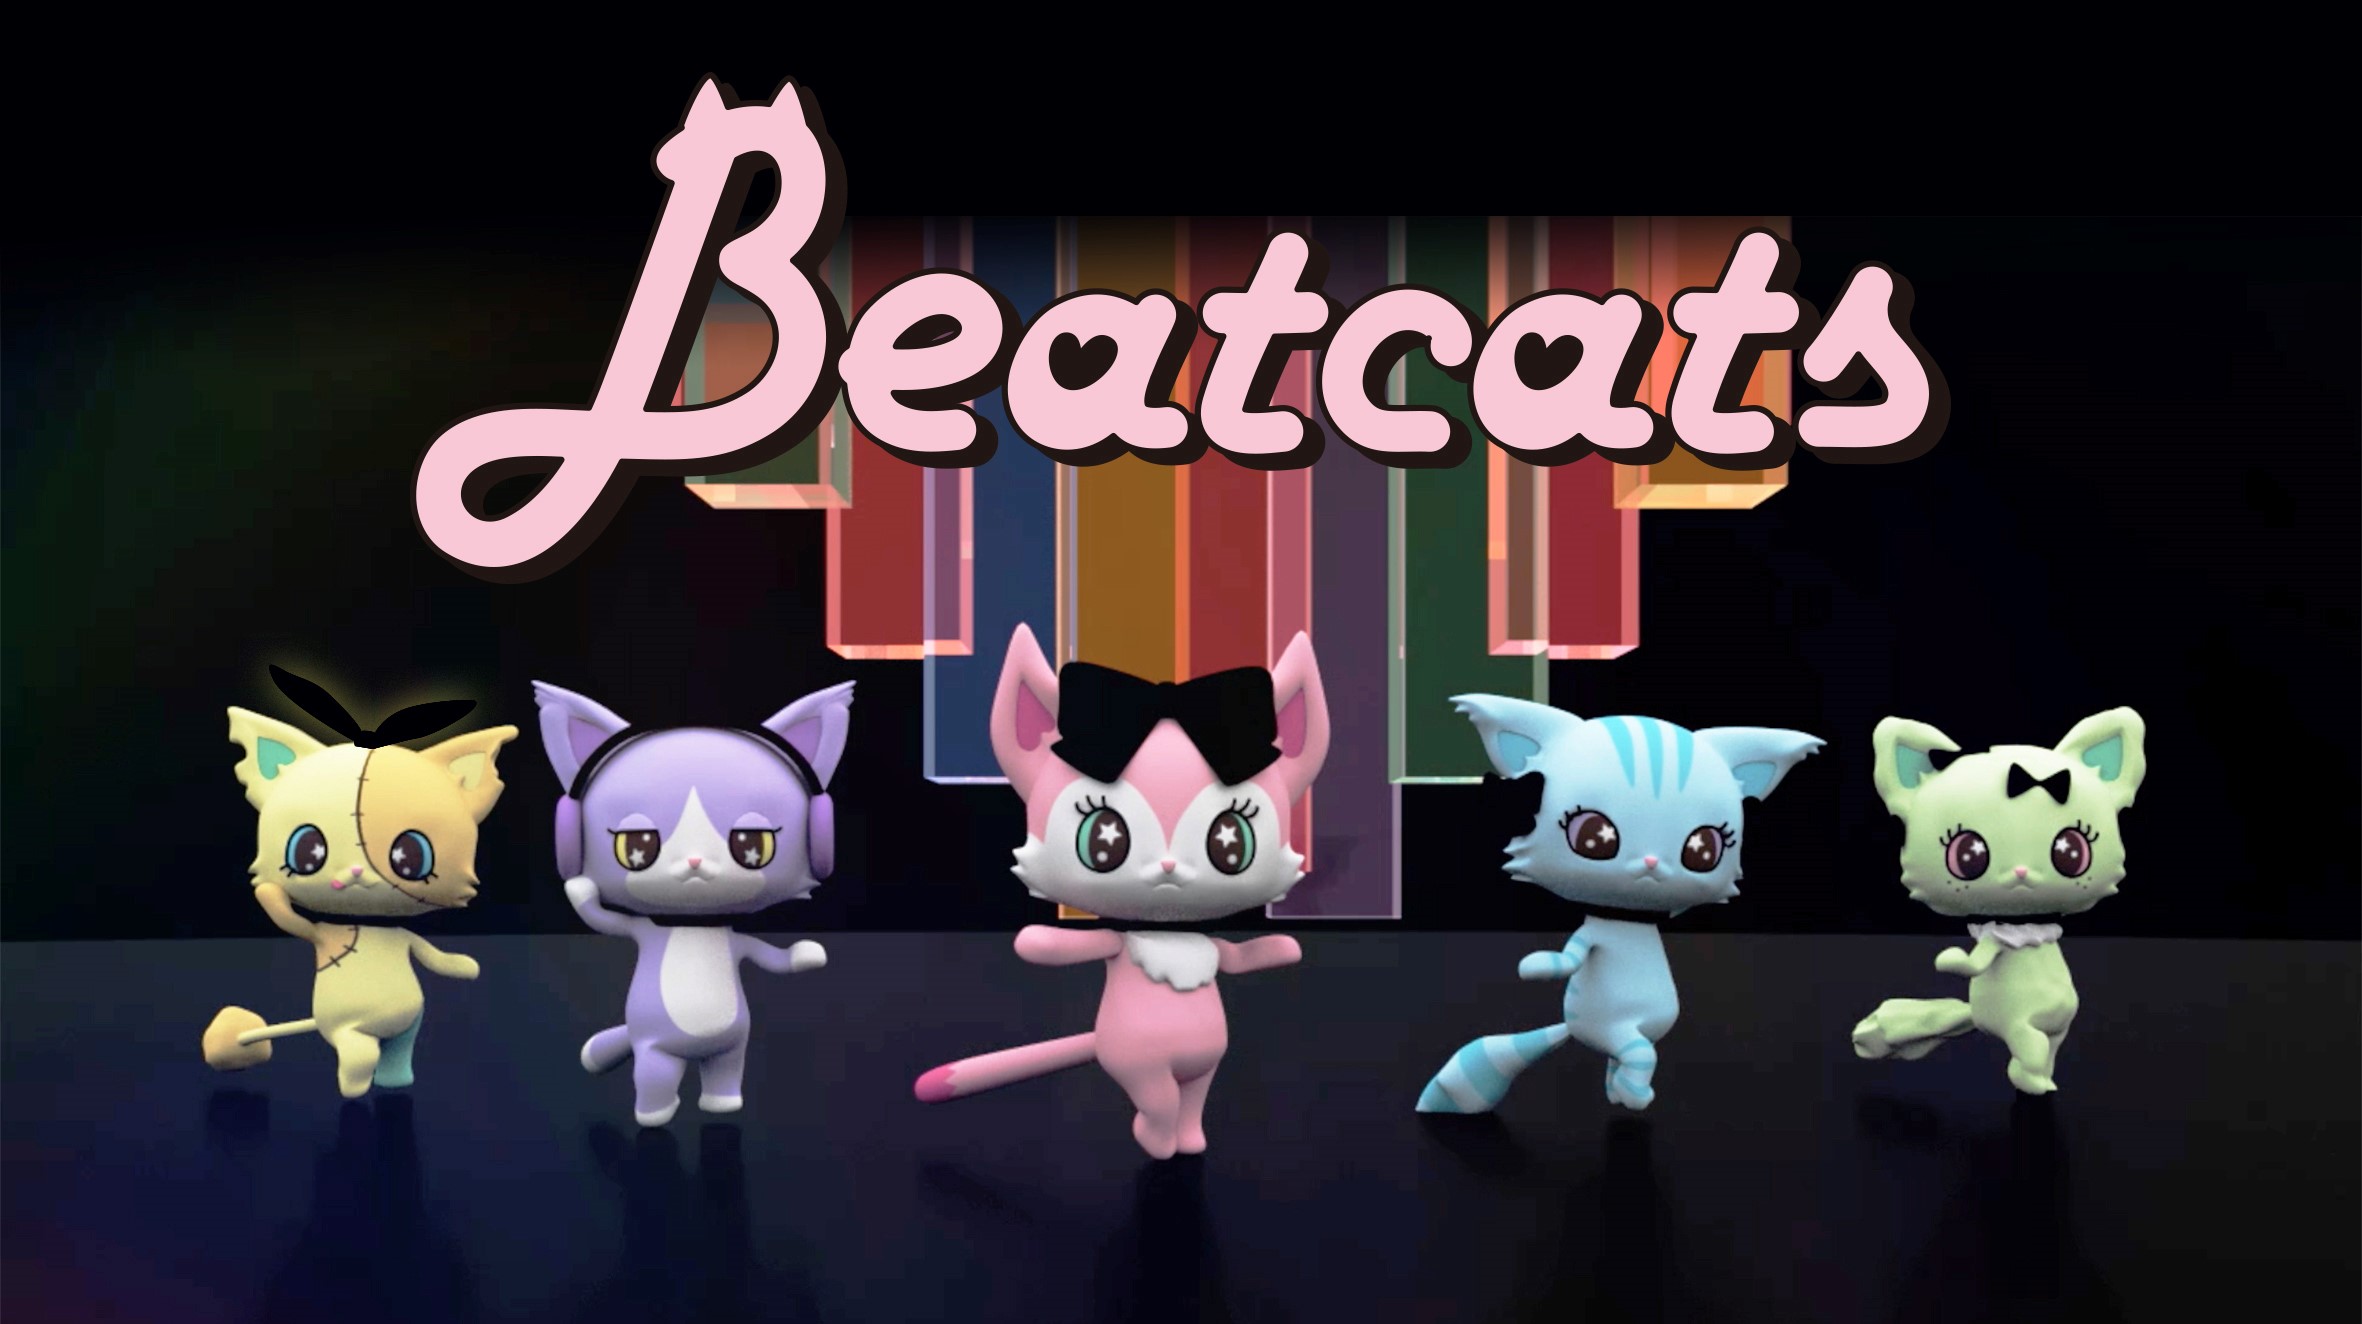 セガトイズとサンリオ 新たなキャラクター共同開発プロジェクト始動5人組ダンスボーカルユニット Beatcats ビートキャッツ 10月8日 木 デビュー 株式会社サンリオのプレスリリース